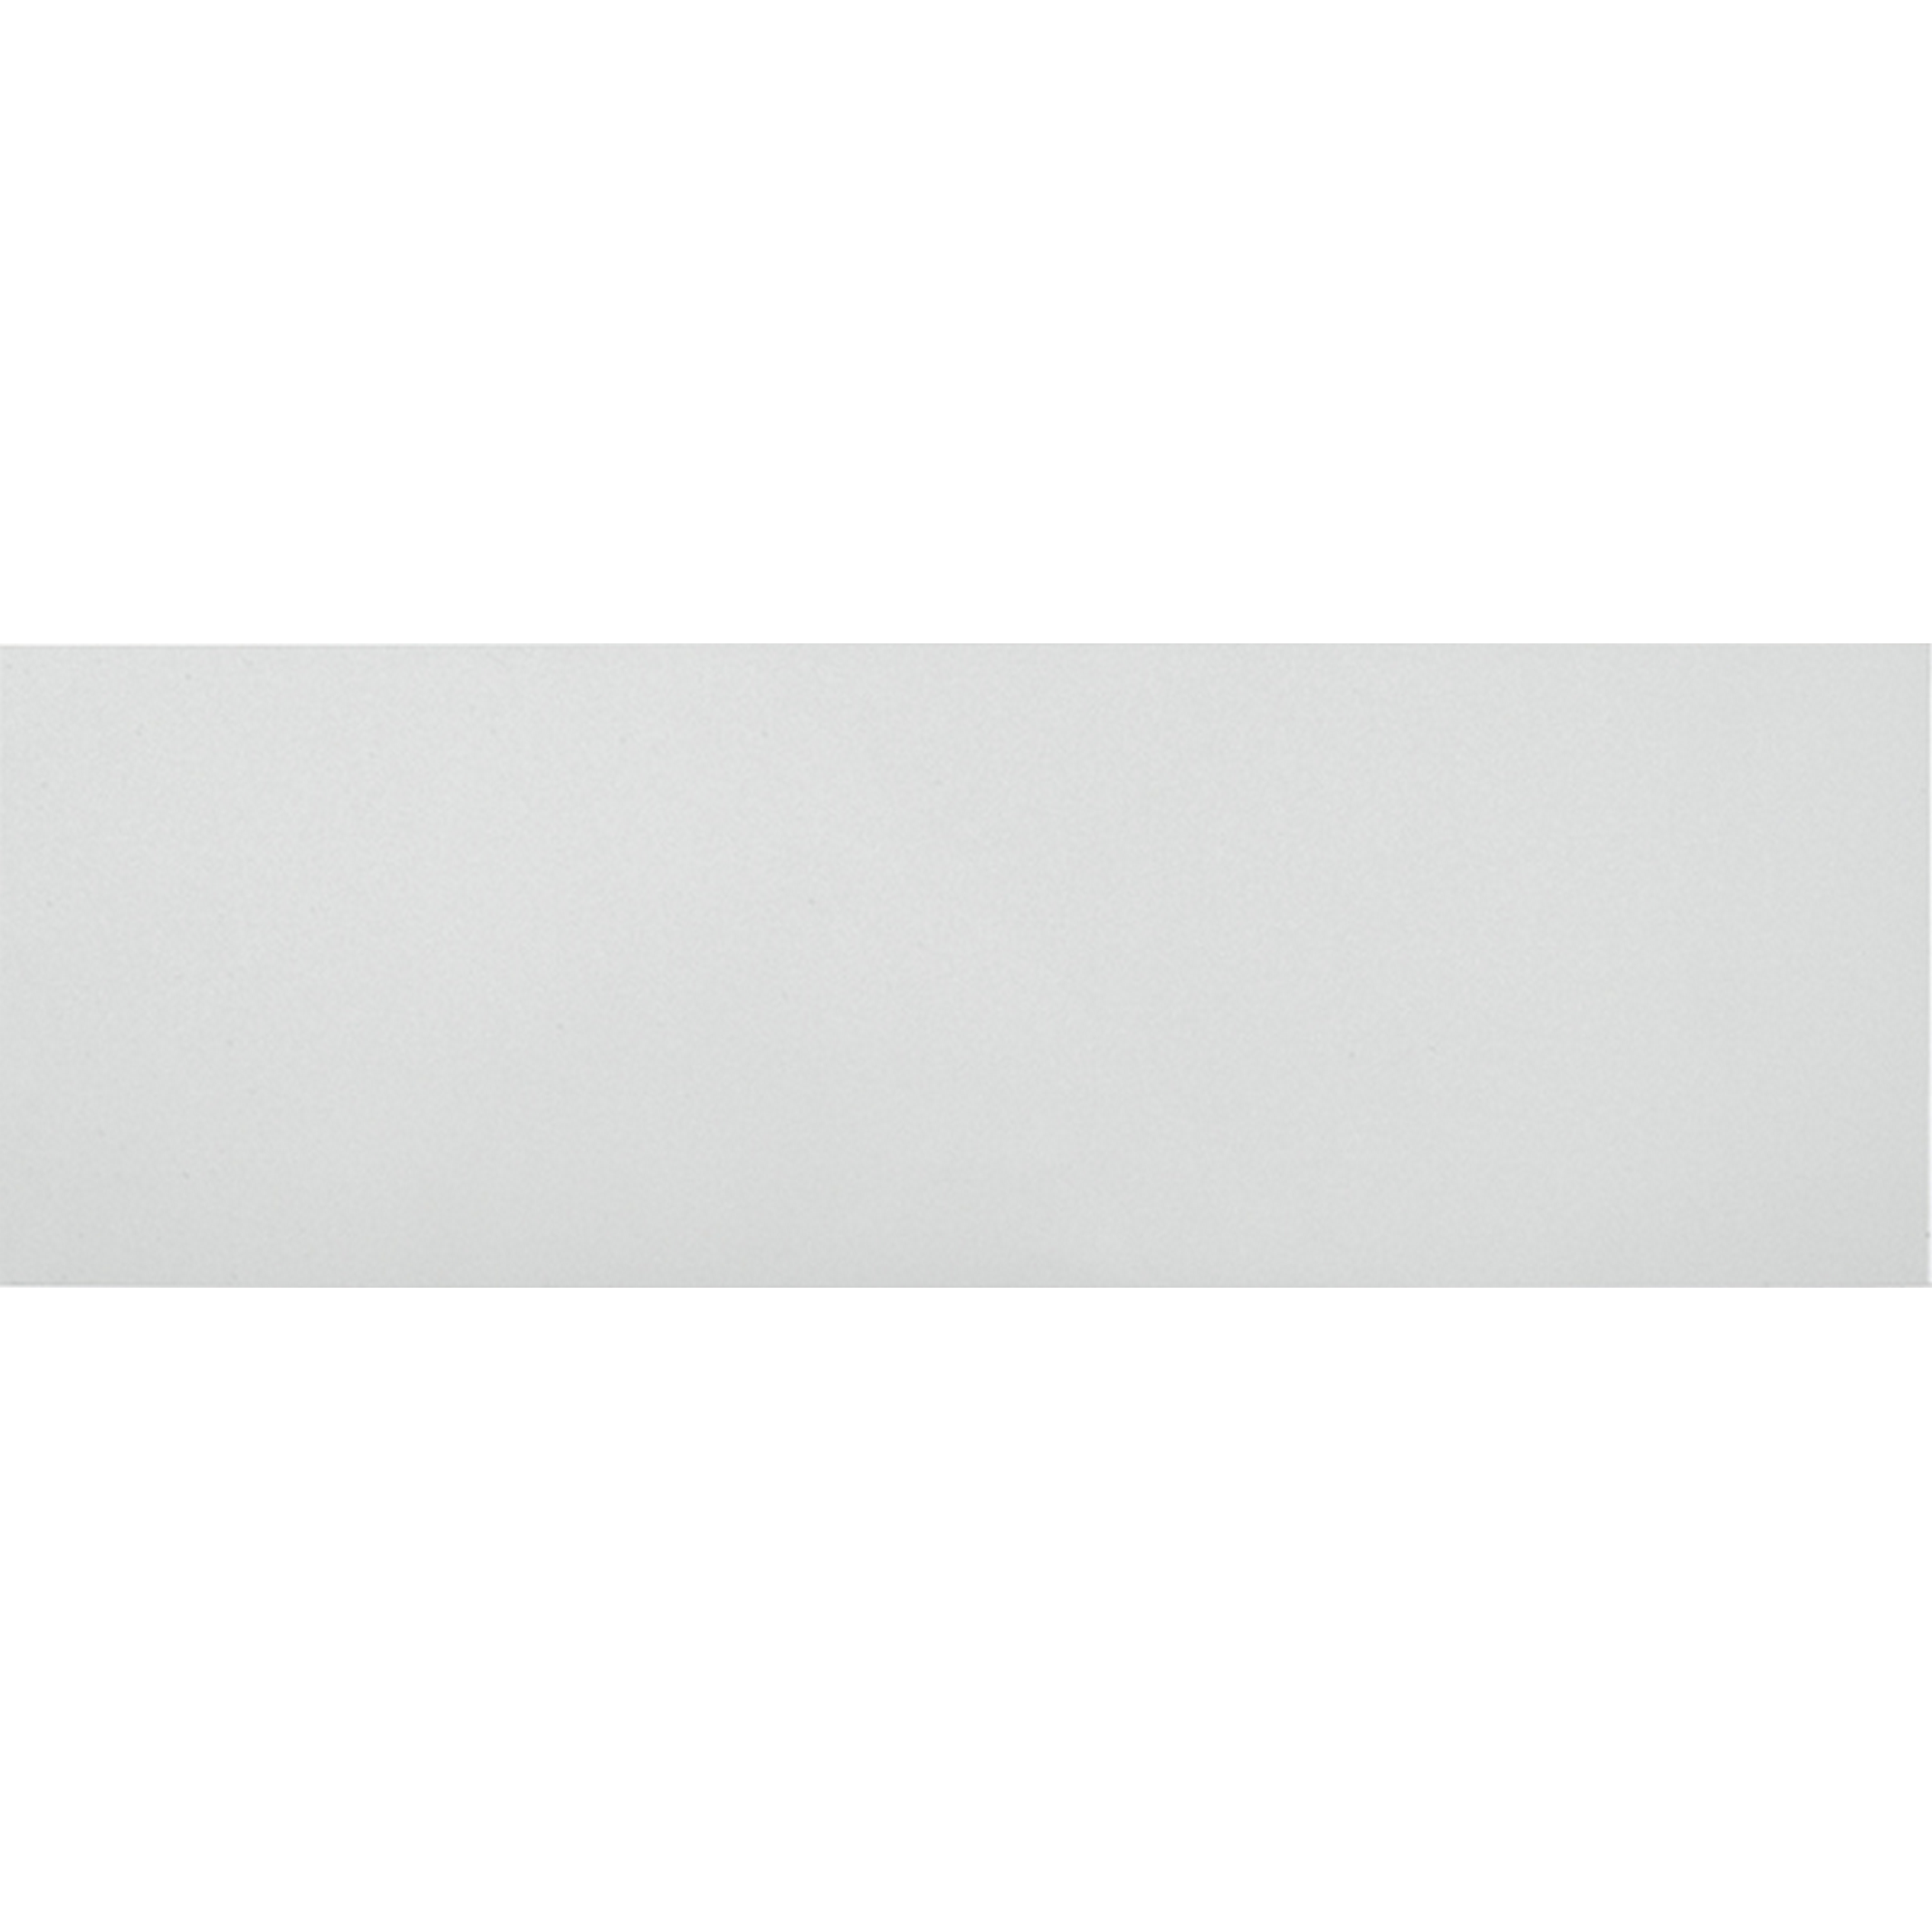 Wandfliese 'White' Steingut weiß glänzend 30 x 90 cm + product picture